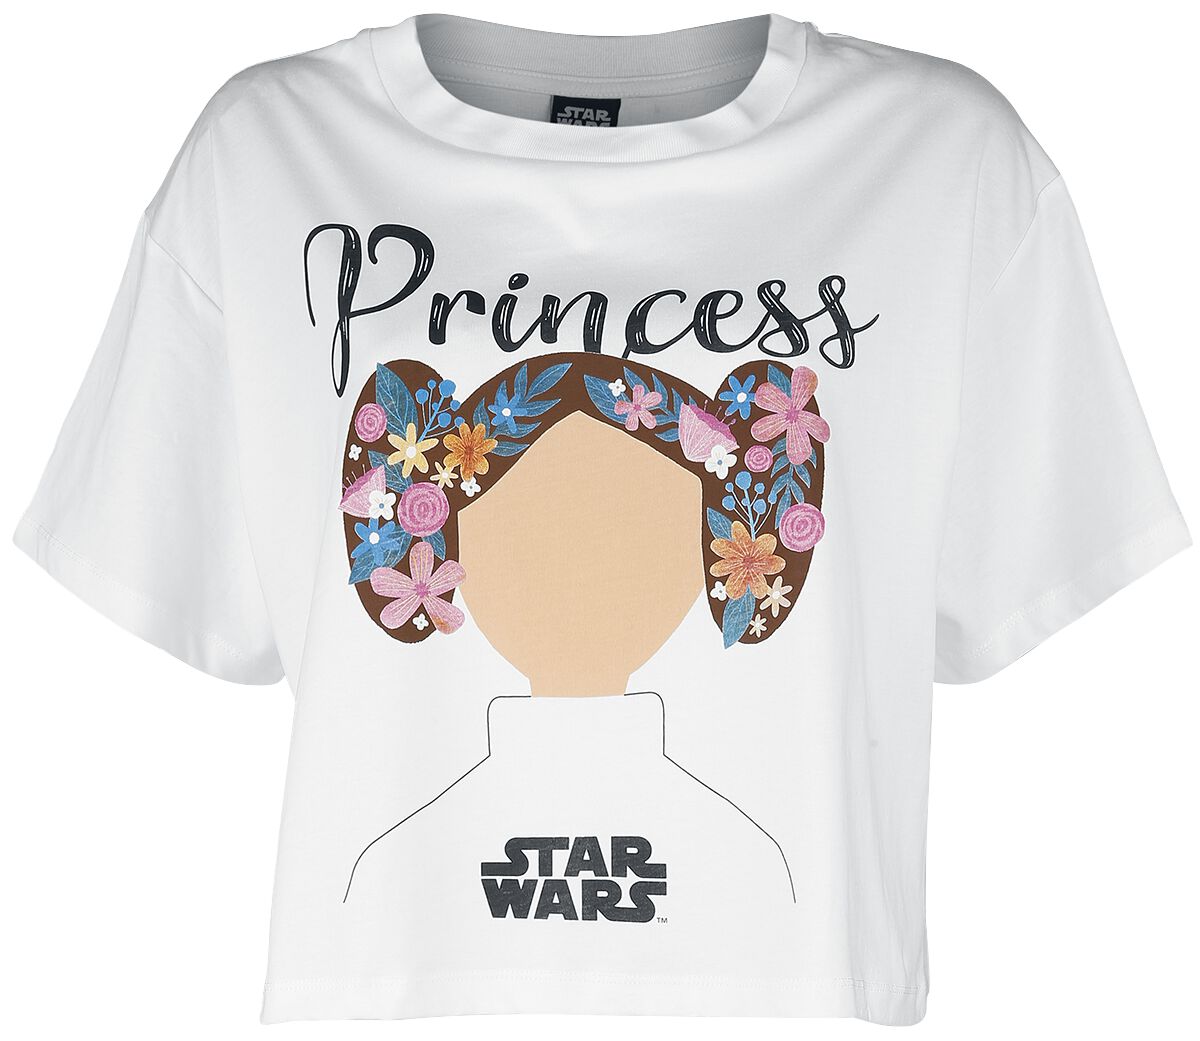 Star Wars Star Wars - Princess Lea T-Shirt weiß in XXL